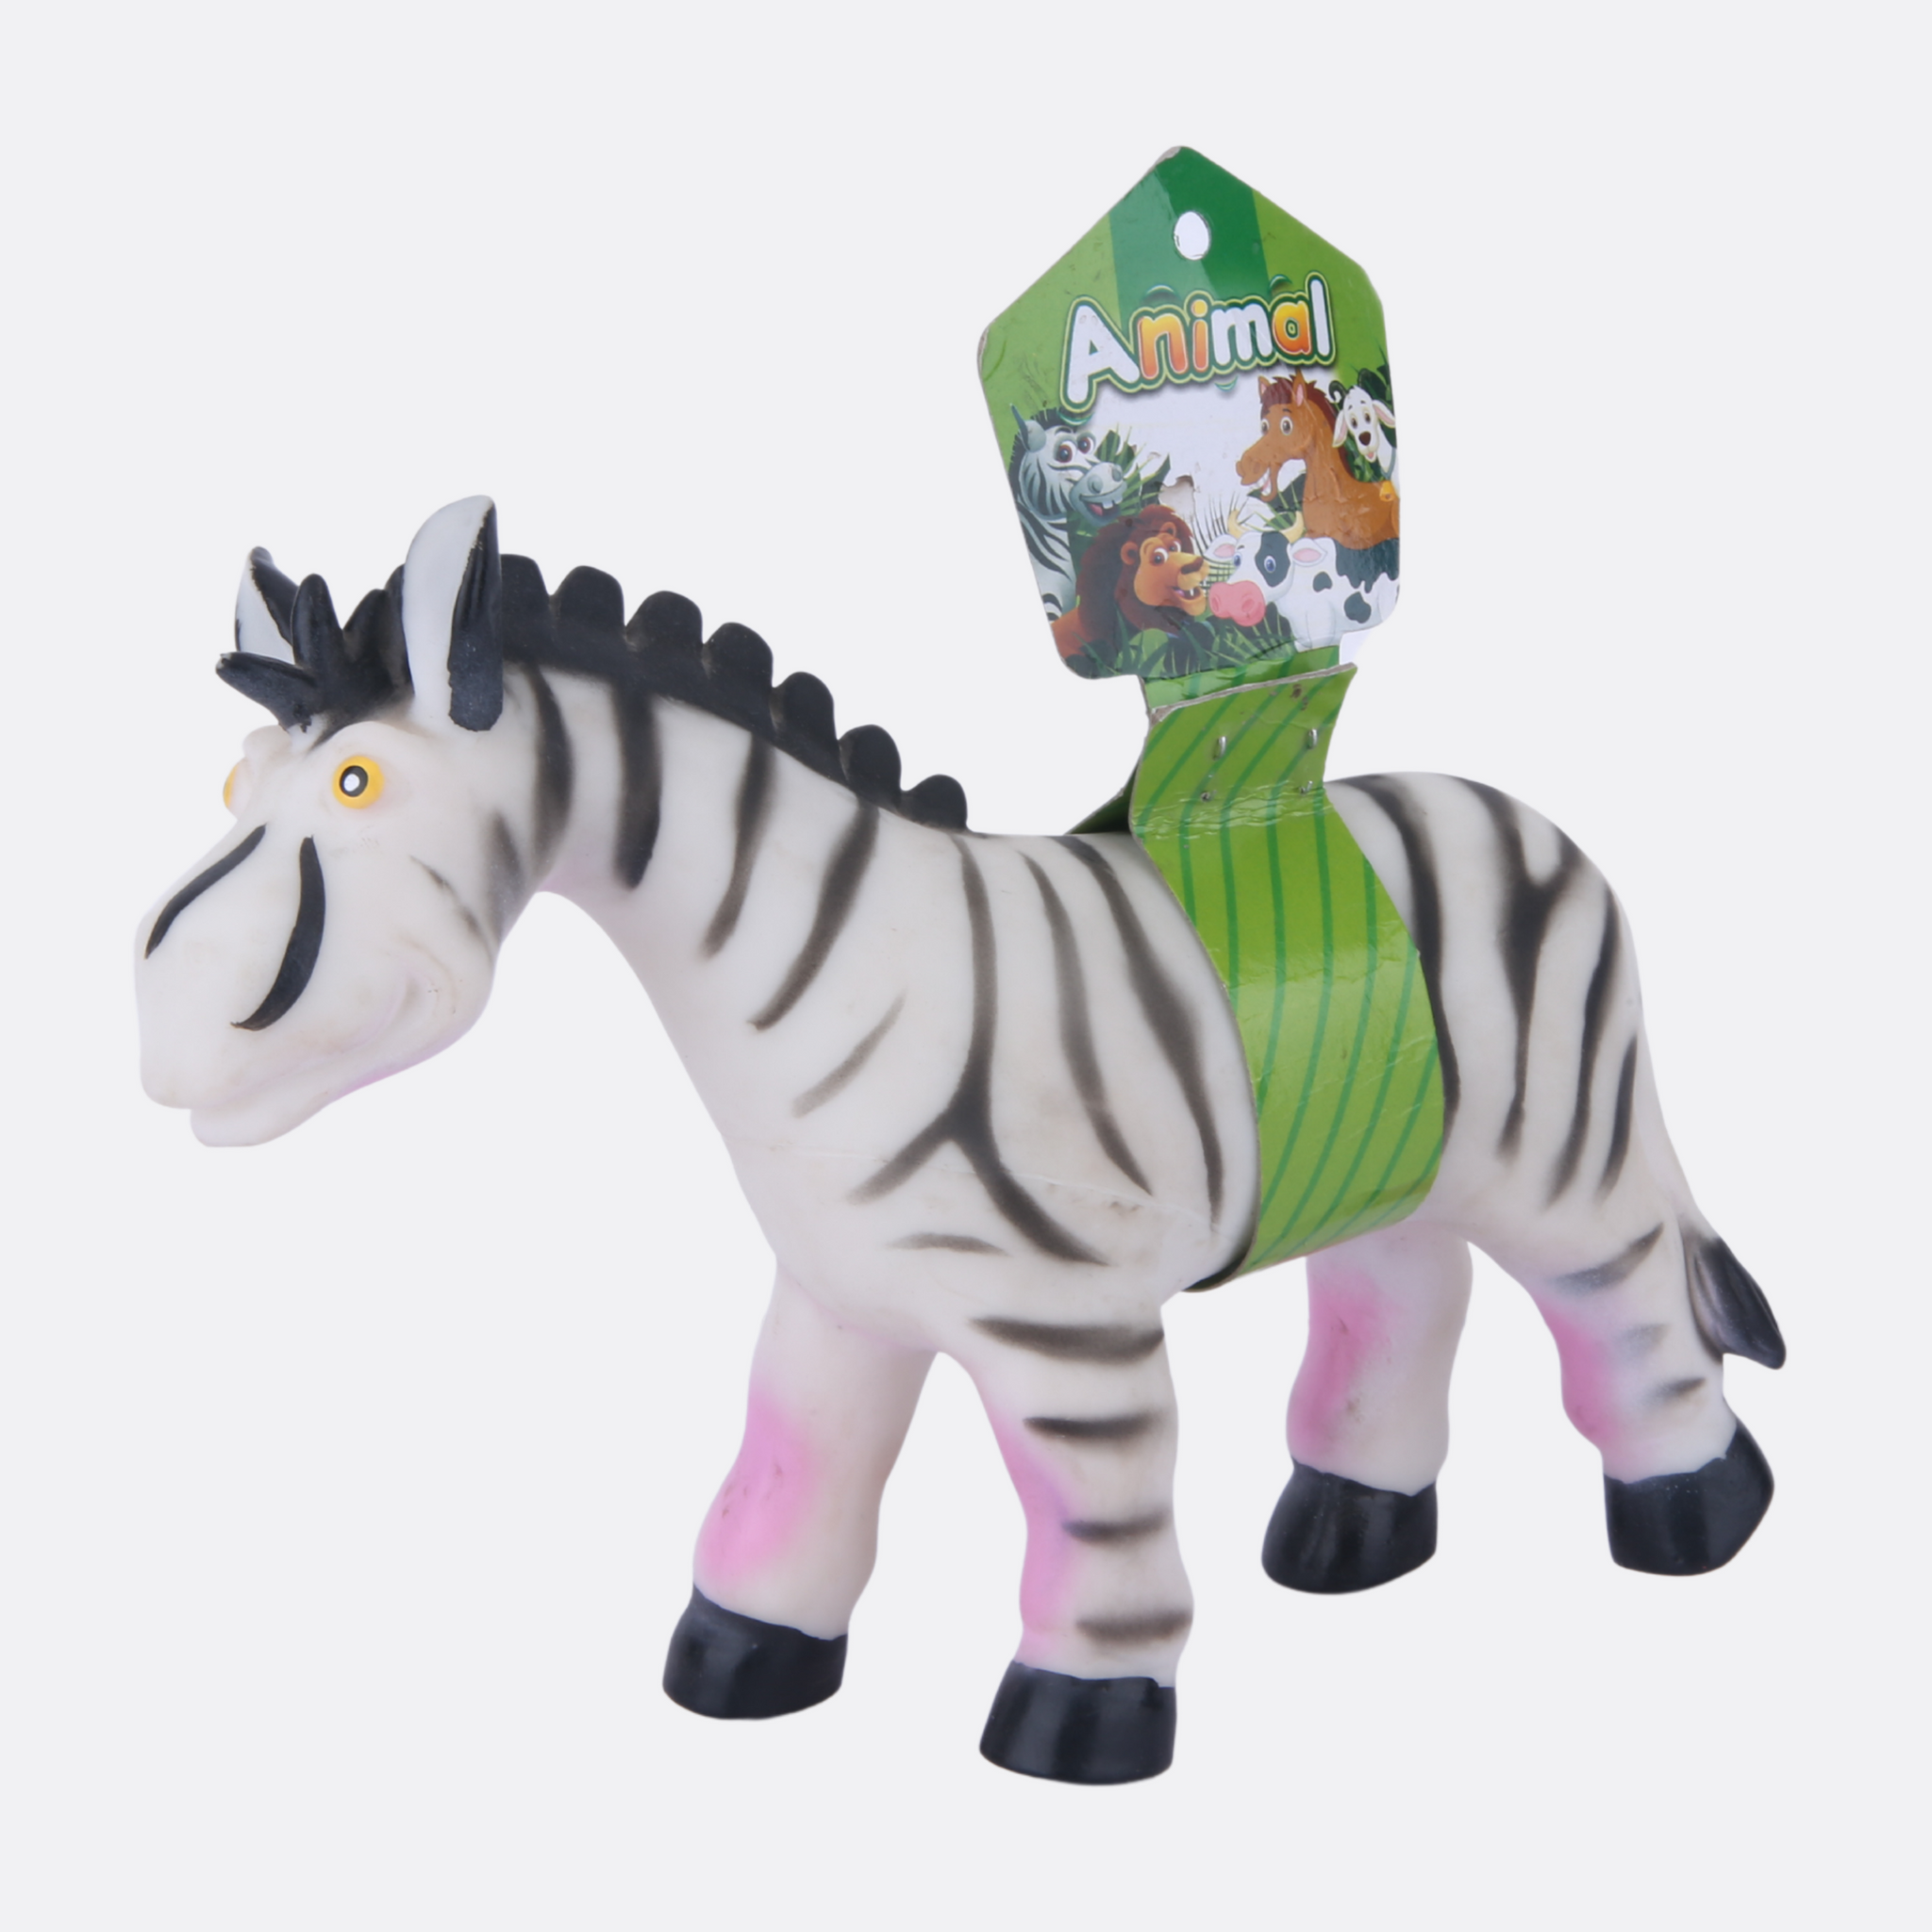 Squishy Zebra toy